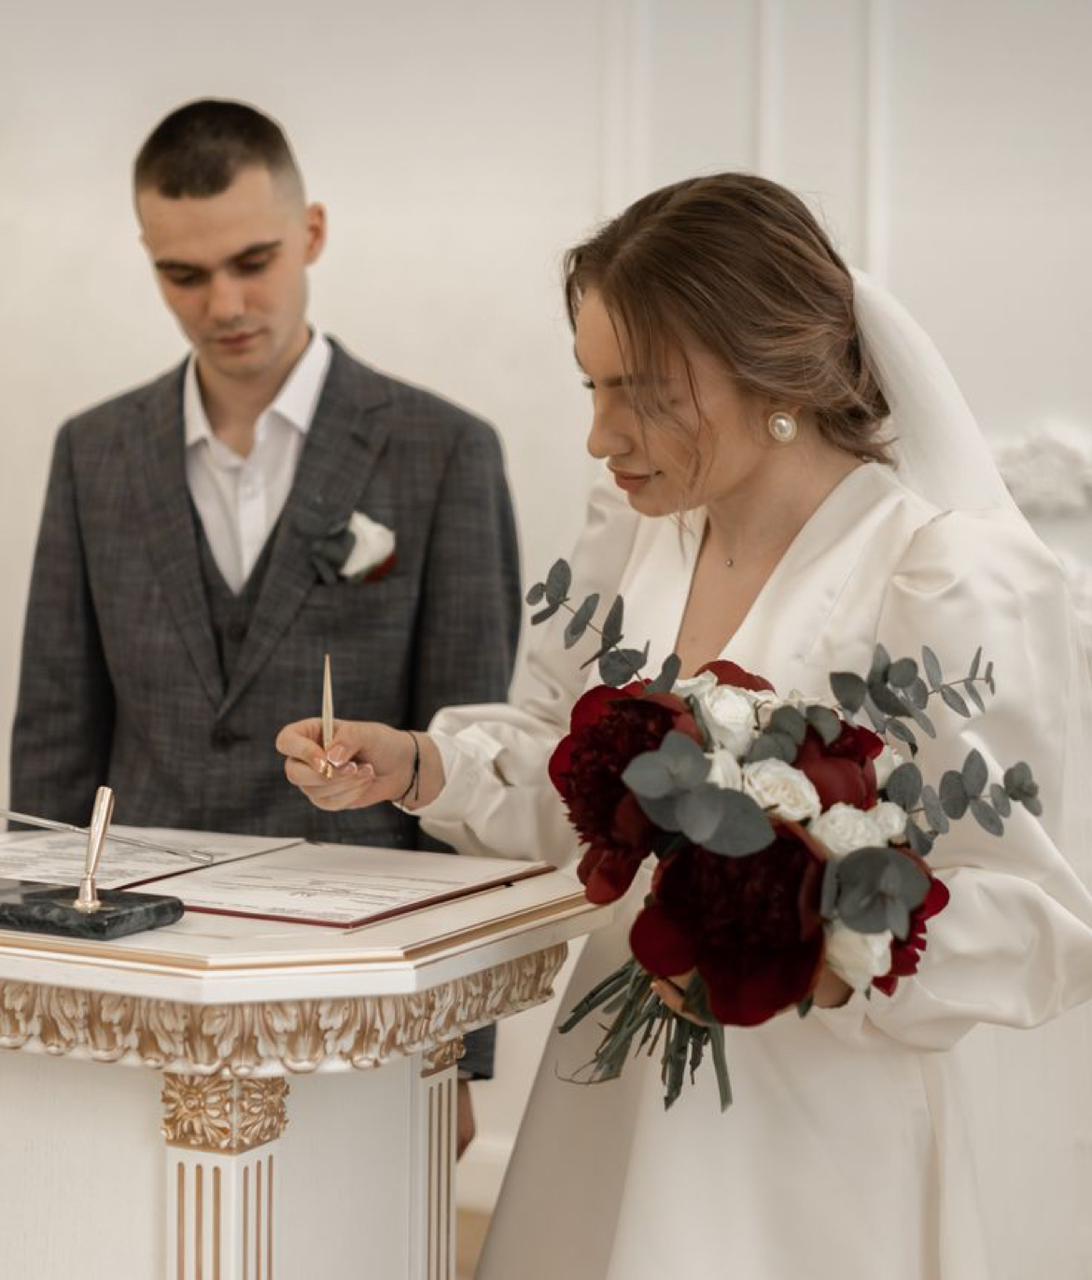 Зеркальная дата: В Усть-Каменогорске зарегистрировали брак               около 70 пар